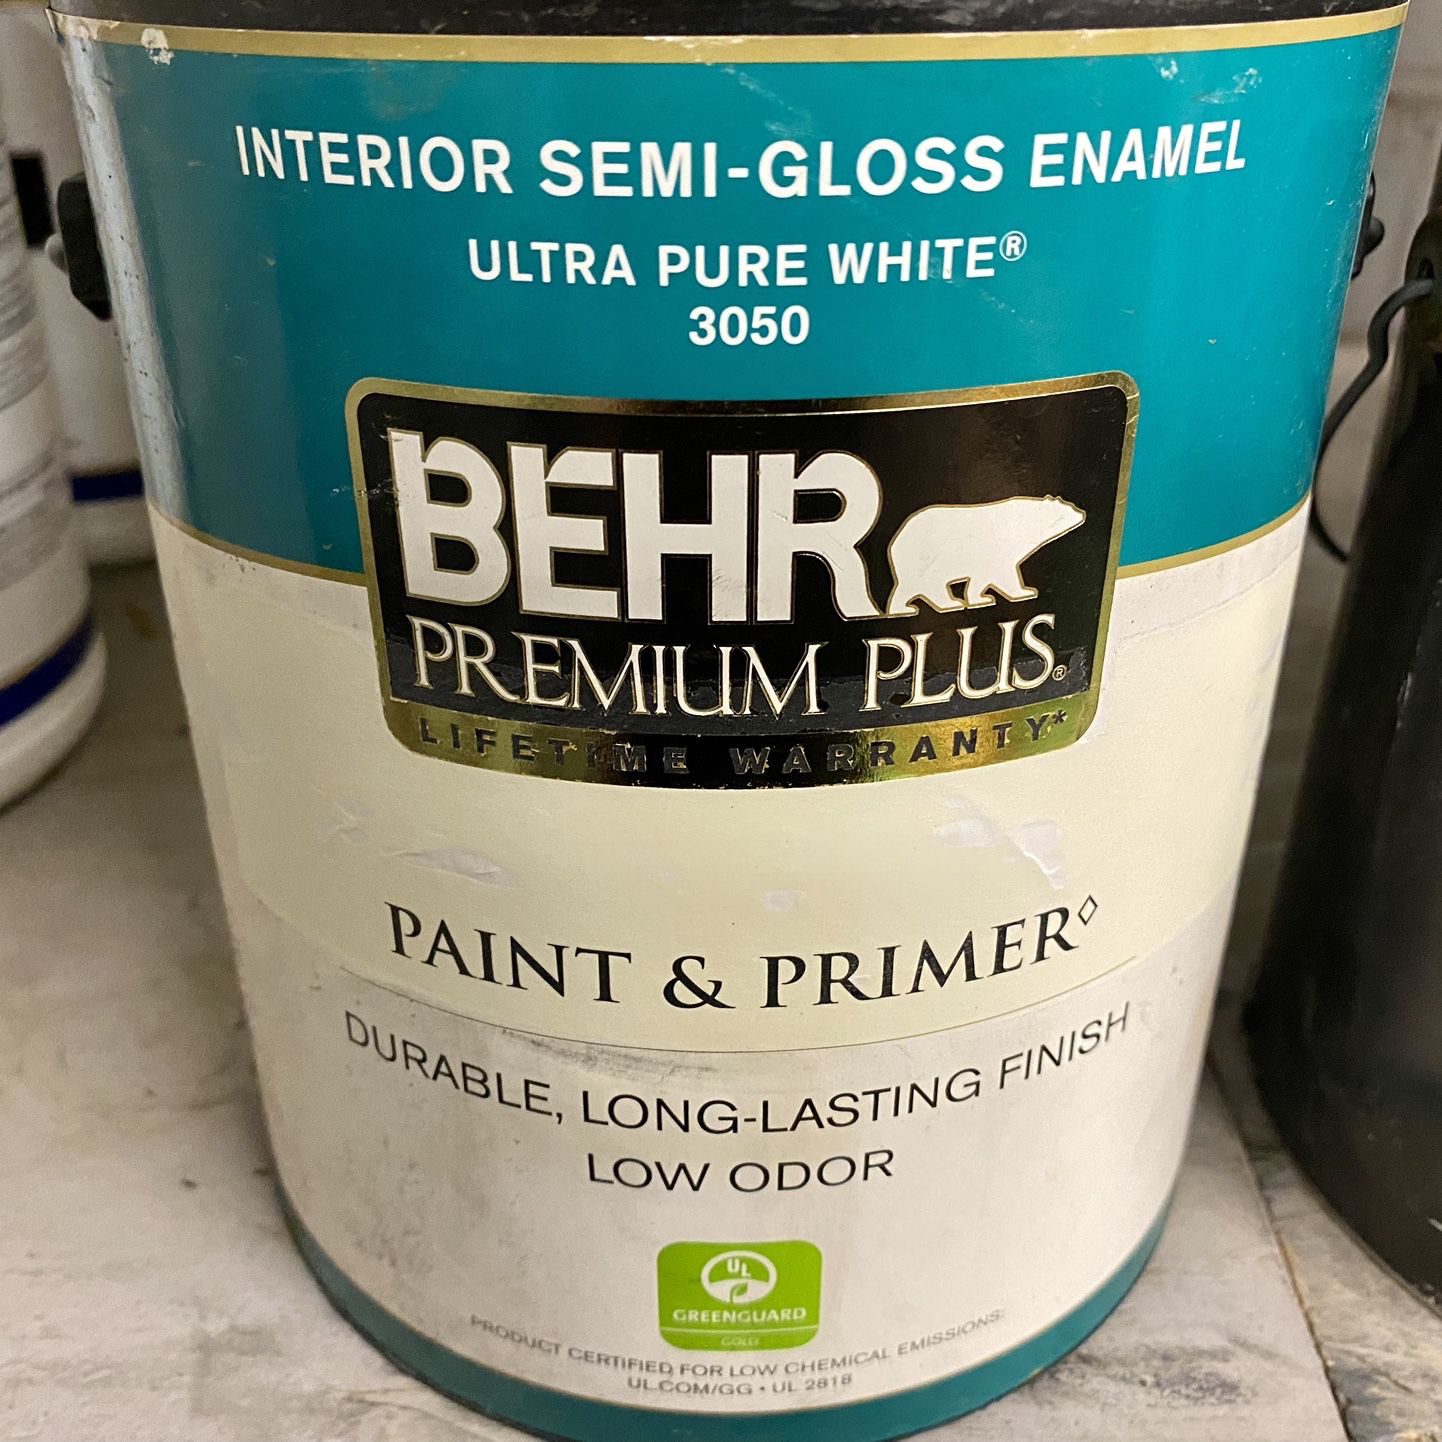 Interior Semi-Gloss Enamel Paint, BEHR PREMIUM PLUS®